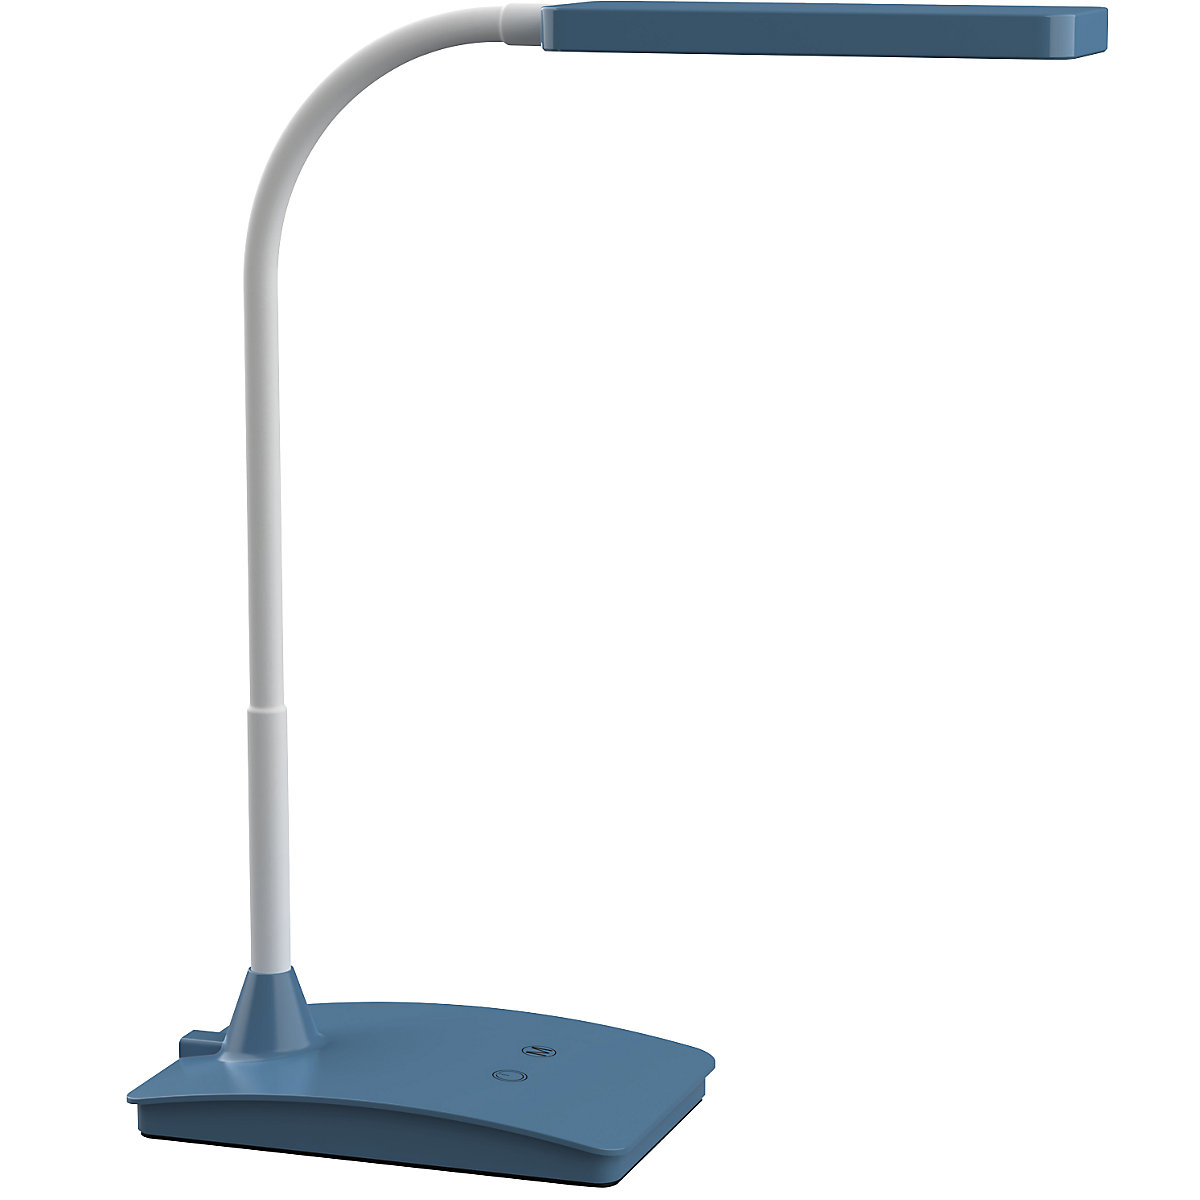 LED-tafellamp MAULpearly colour vario – MAUL, dimbaar, 616 lm, 5 W, blauw-16